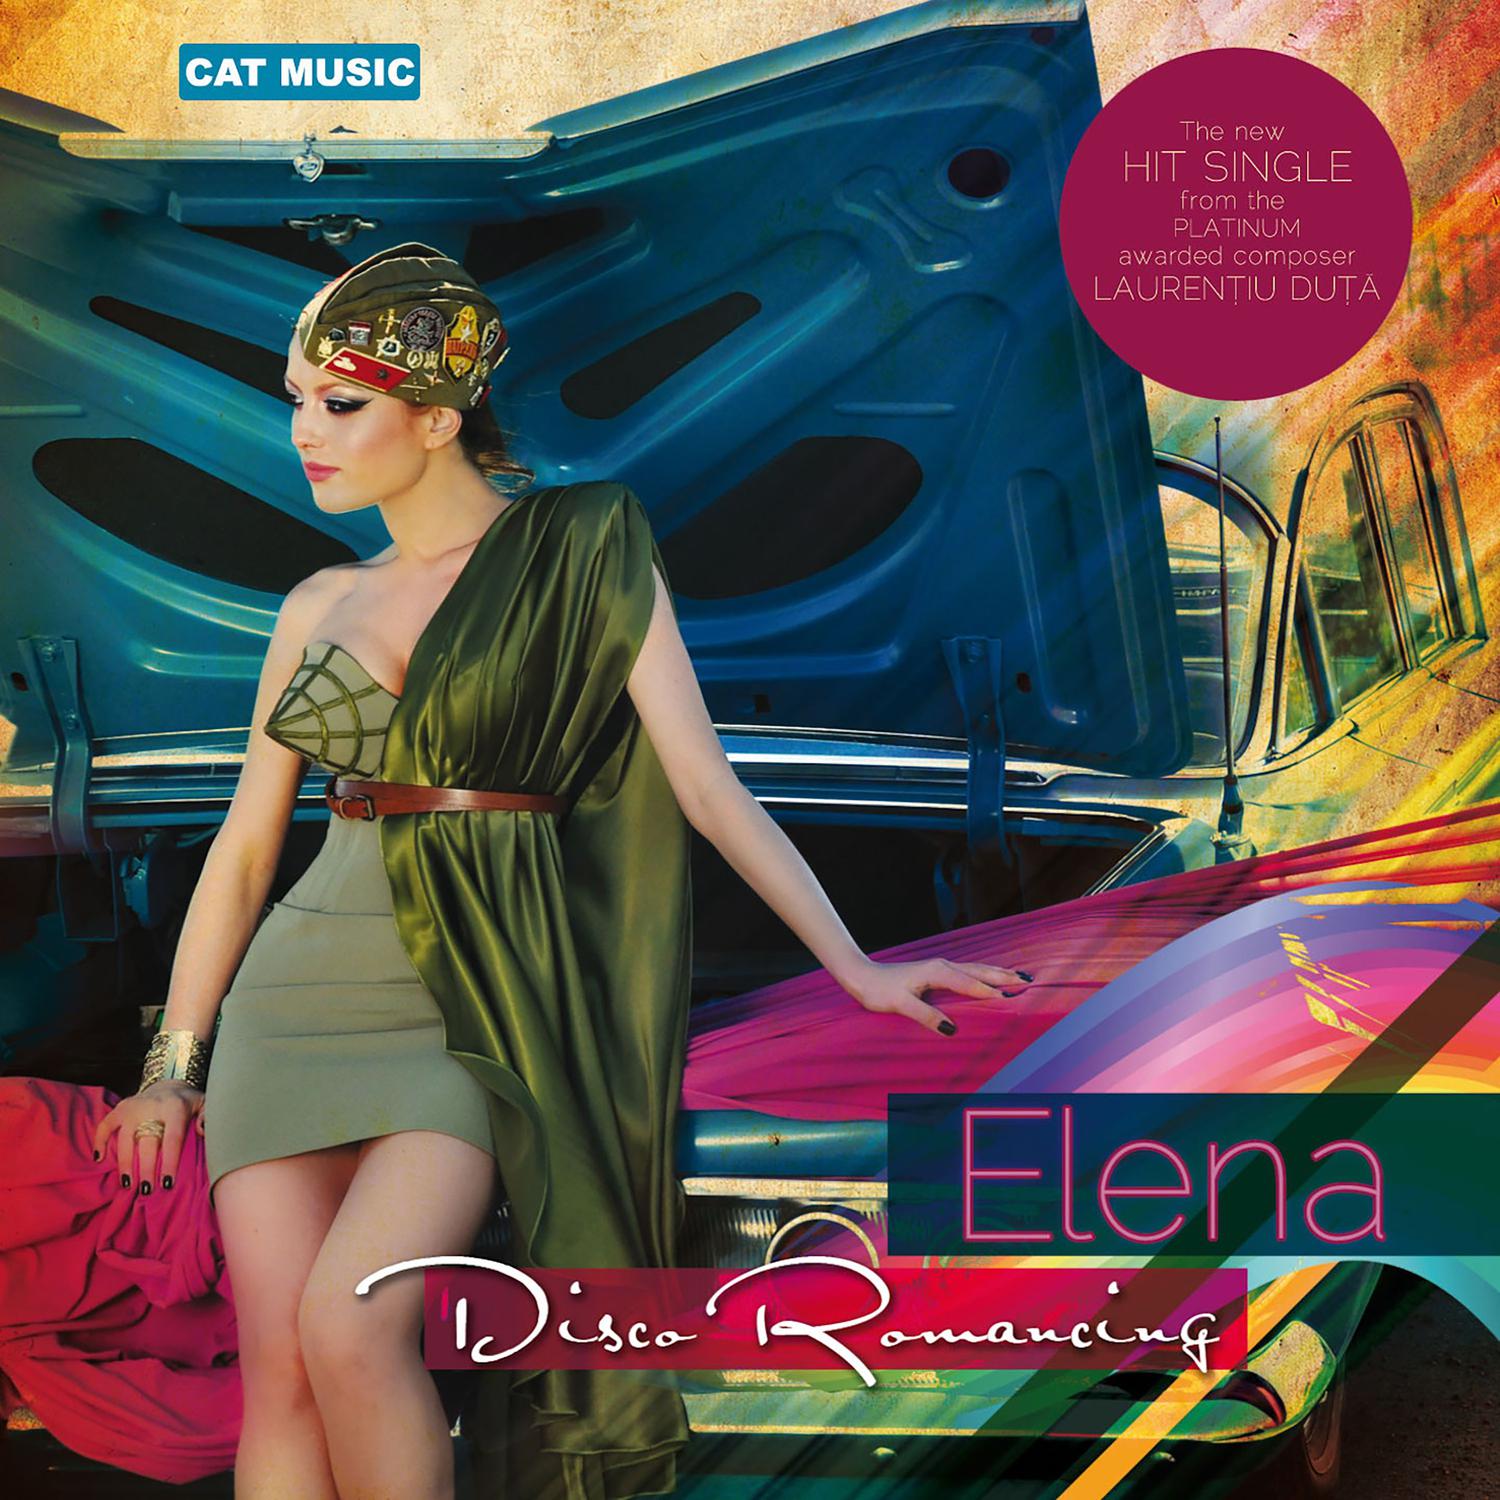 Elena - Disco Romancing (Bonne DJ Remix)